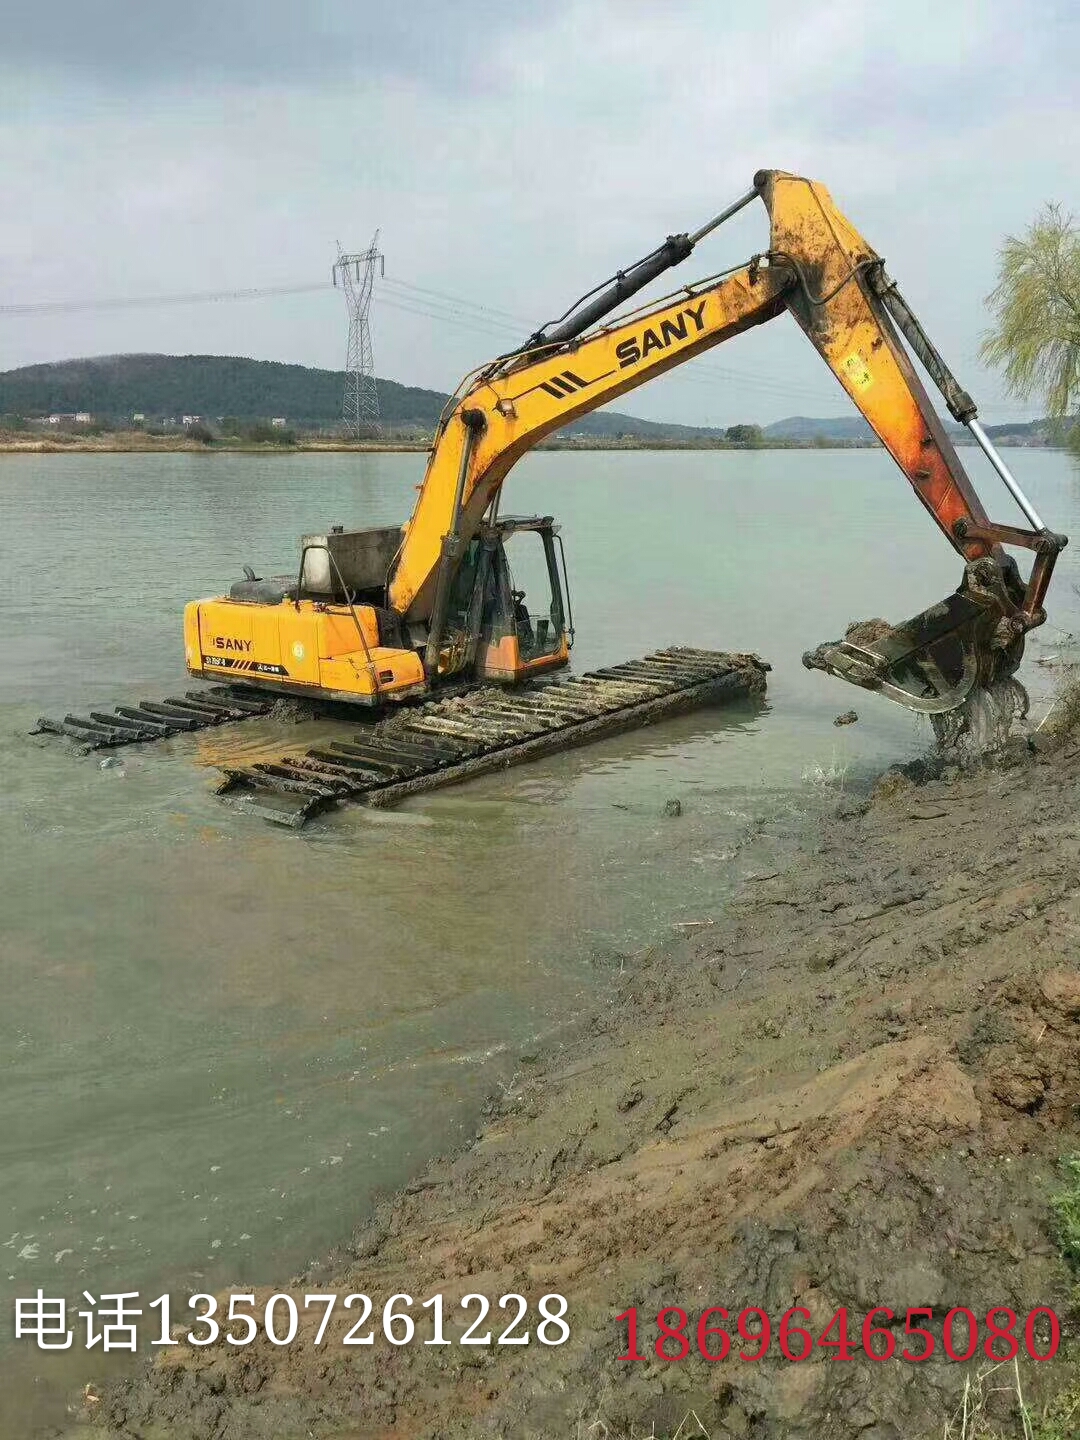 
水上挖掘机出租专业厂家